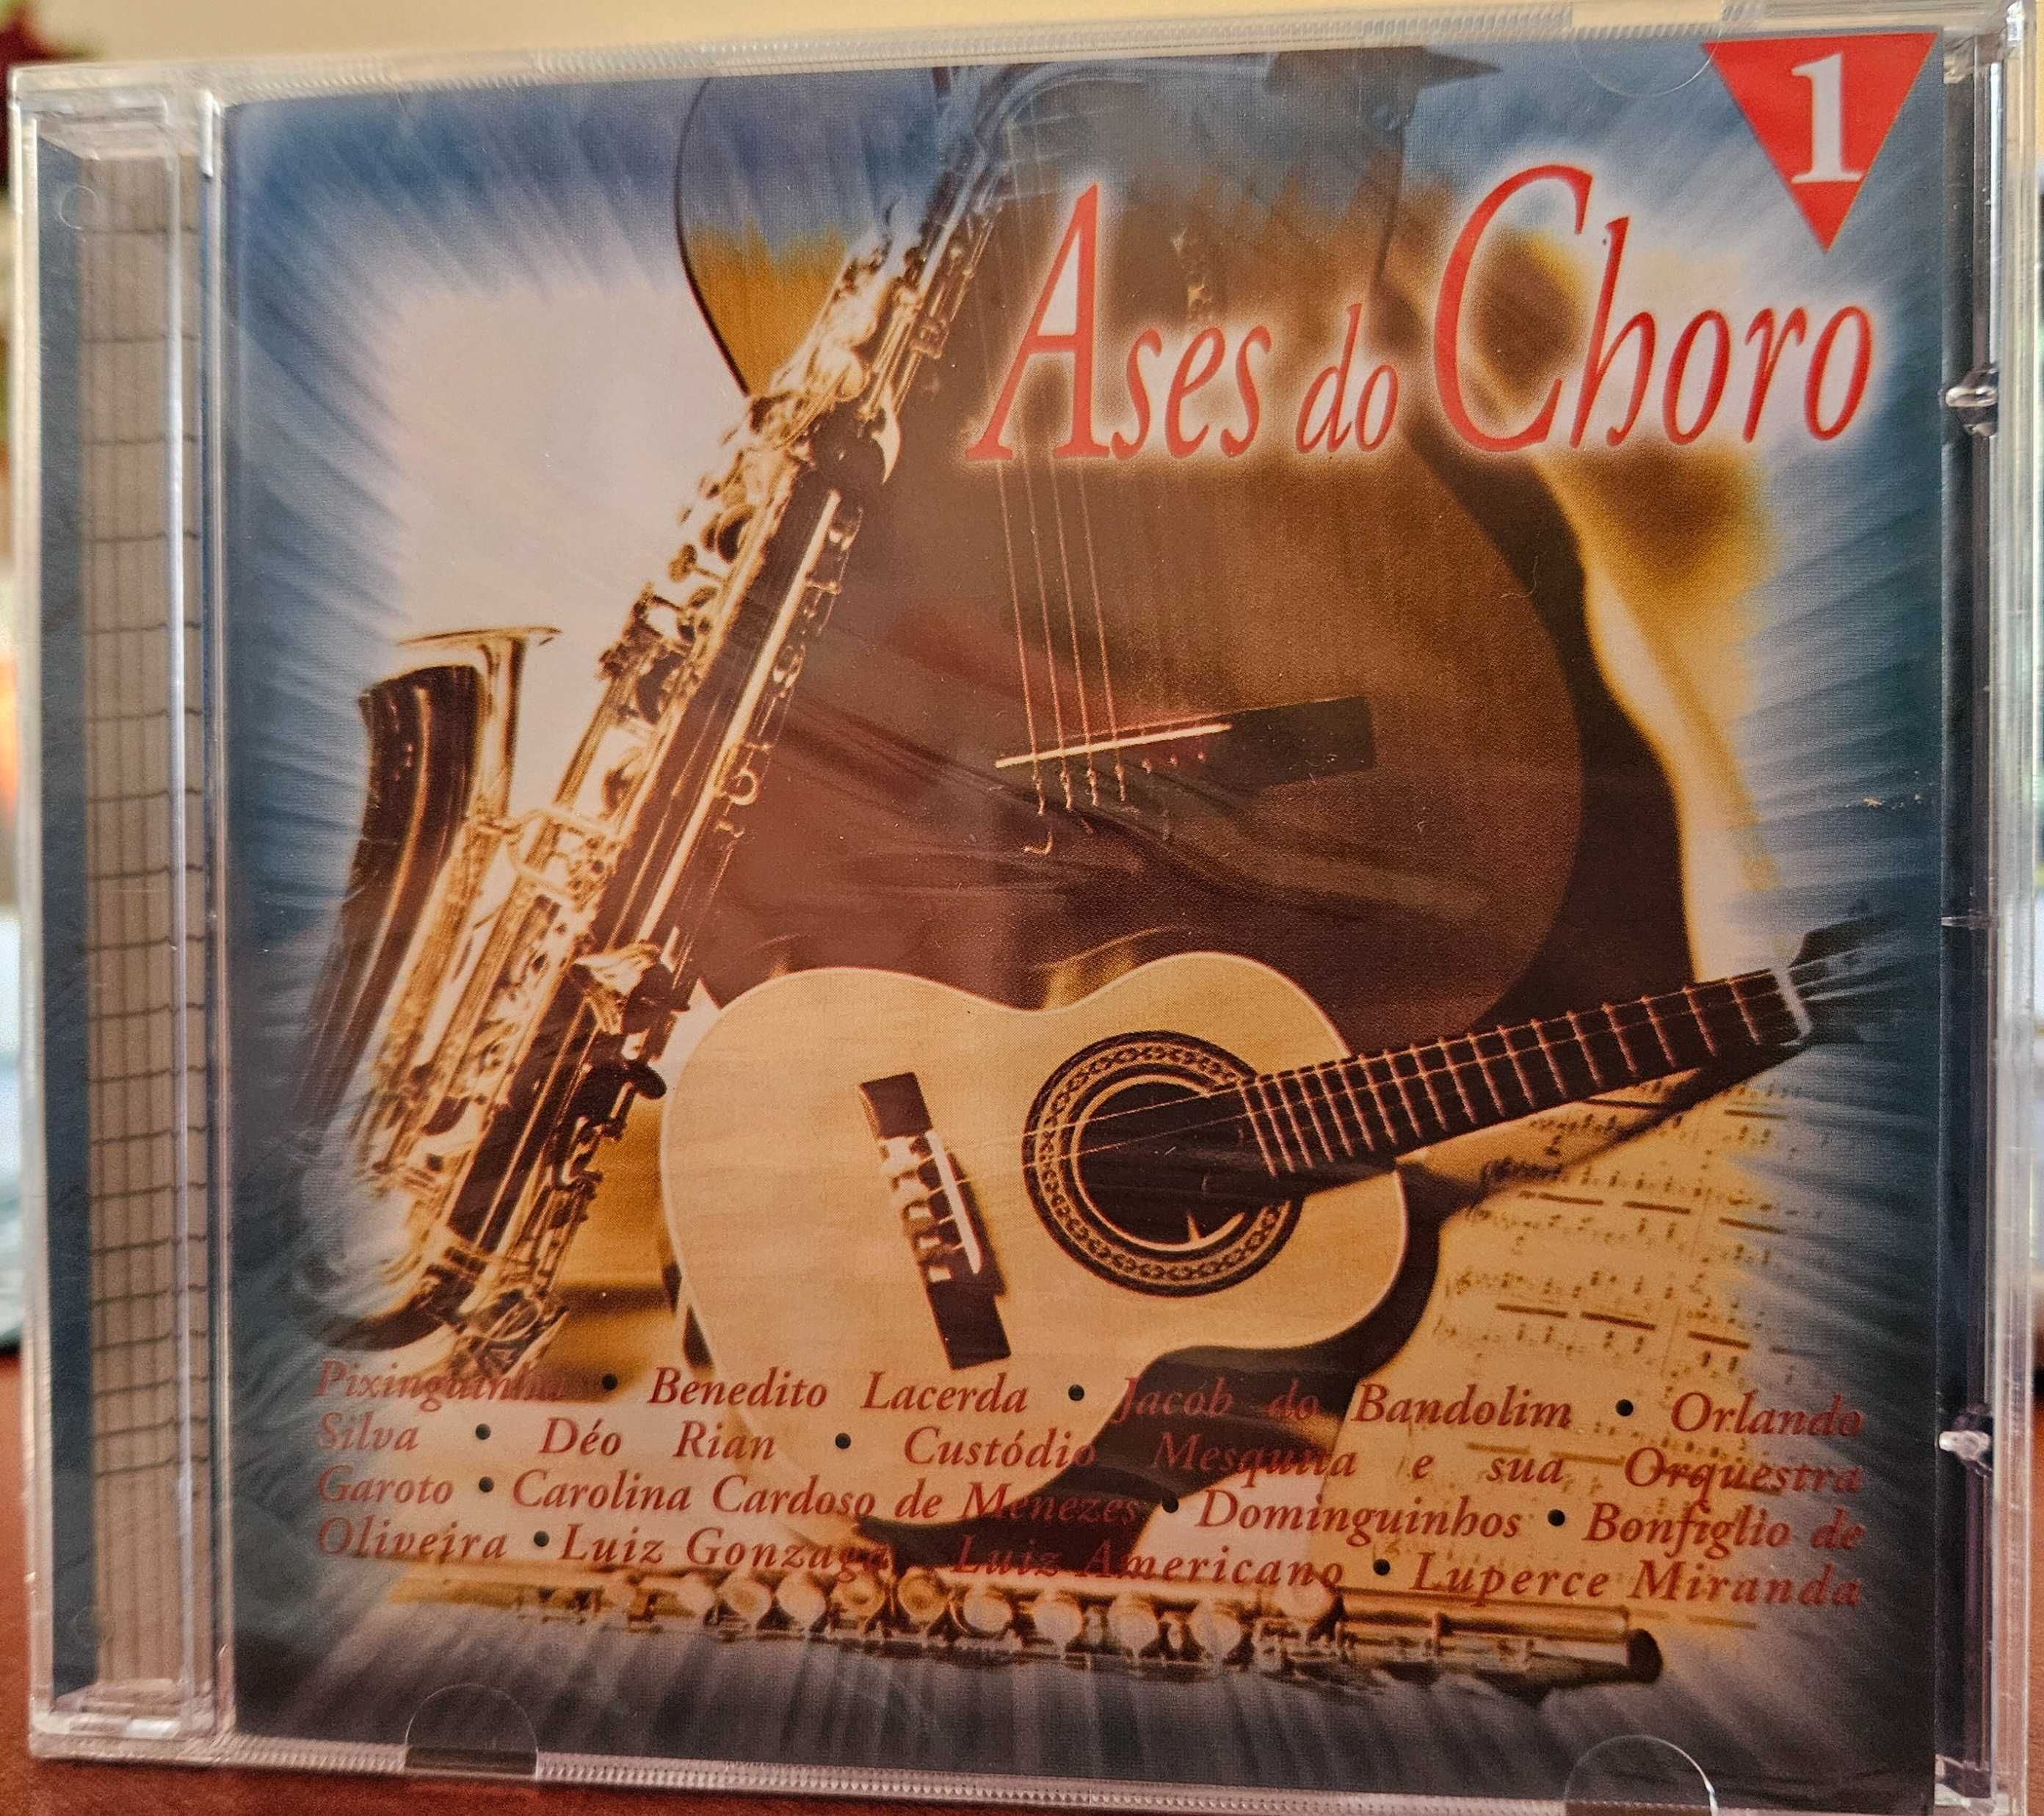 CD - Ases do Choro Vol 1 - Vários artistas música brasileria (NOVO)